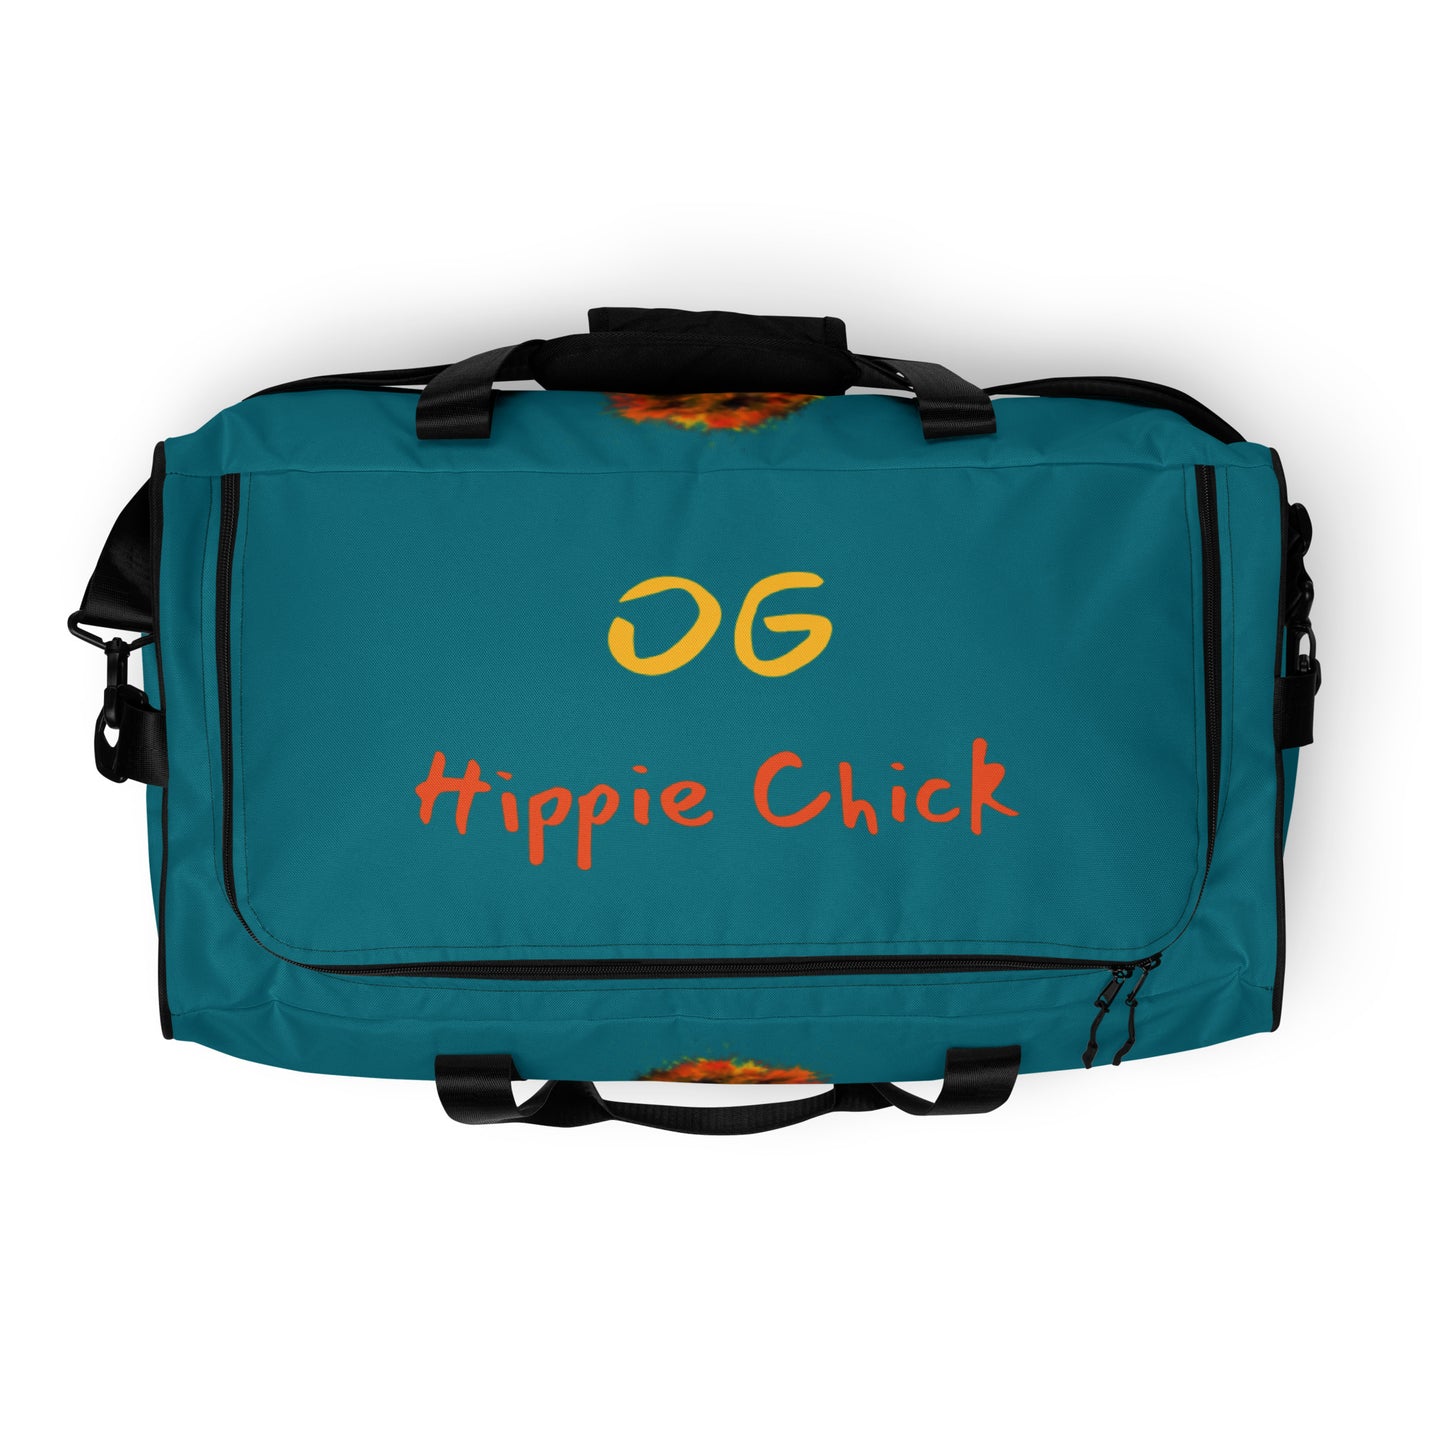 Teal Duffle Bag - OG Hippie Chick